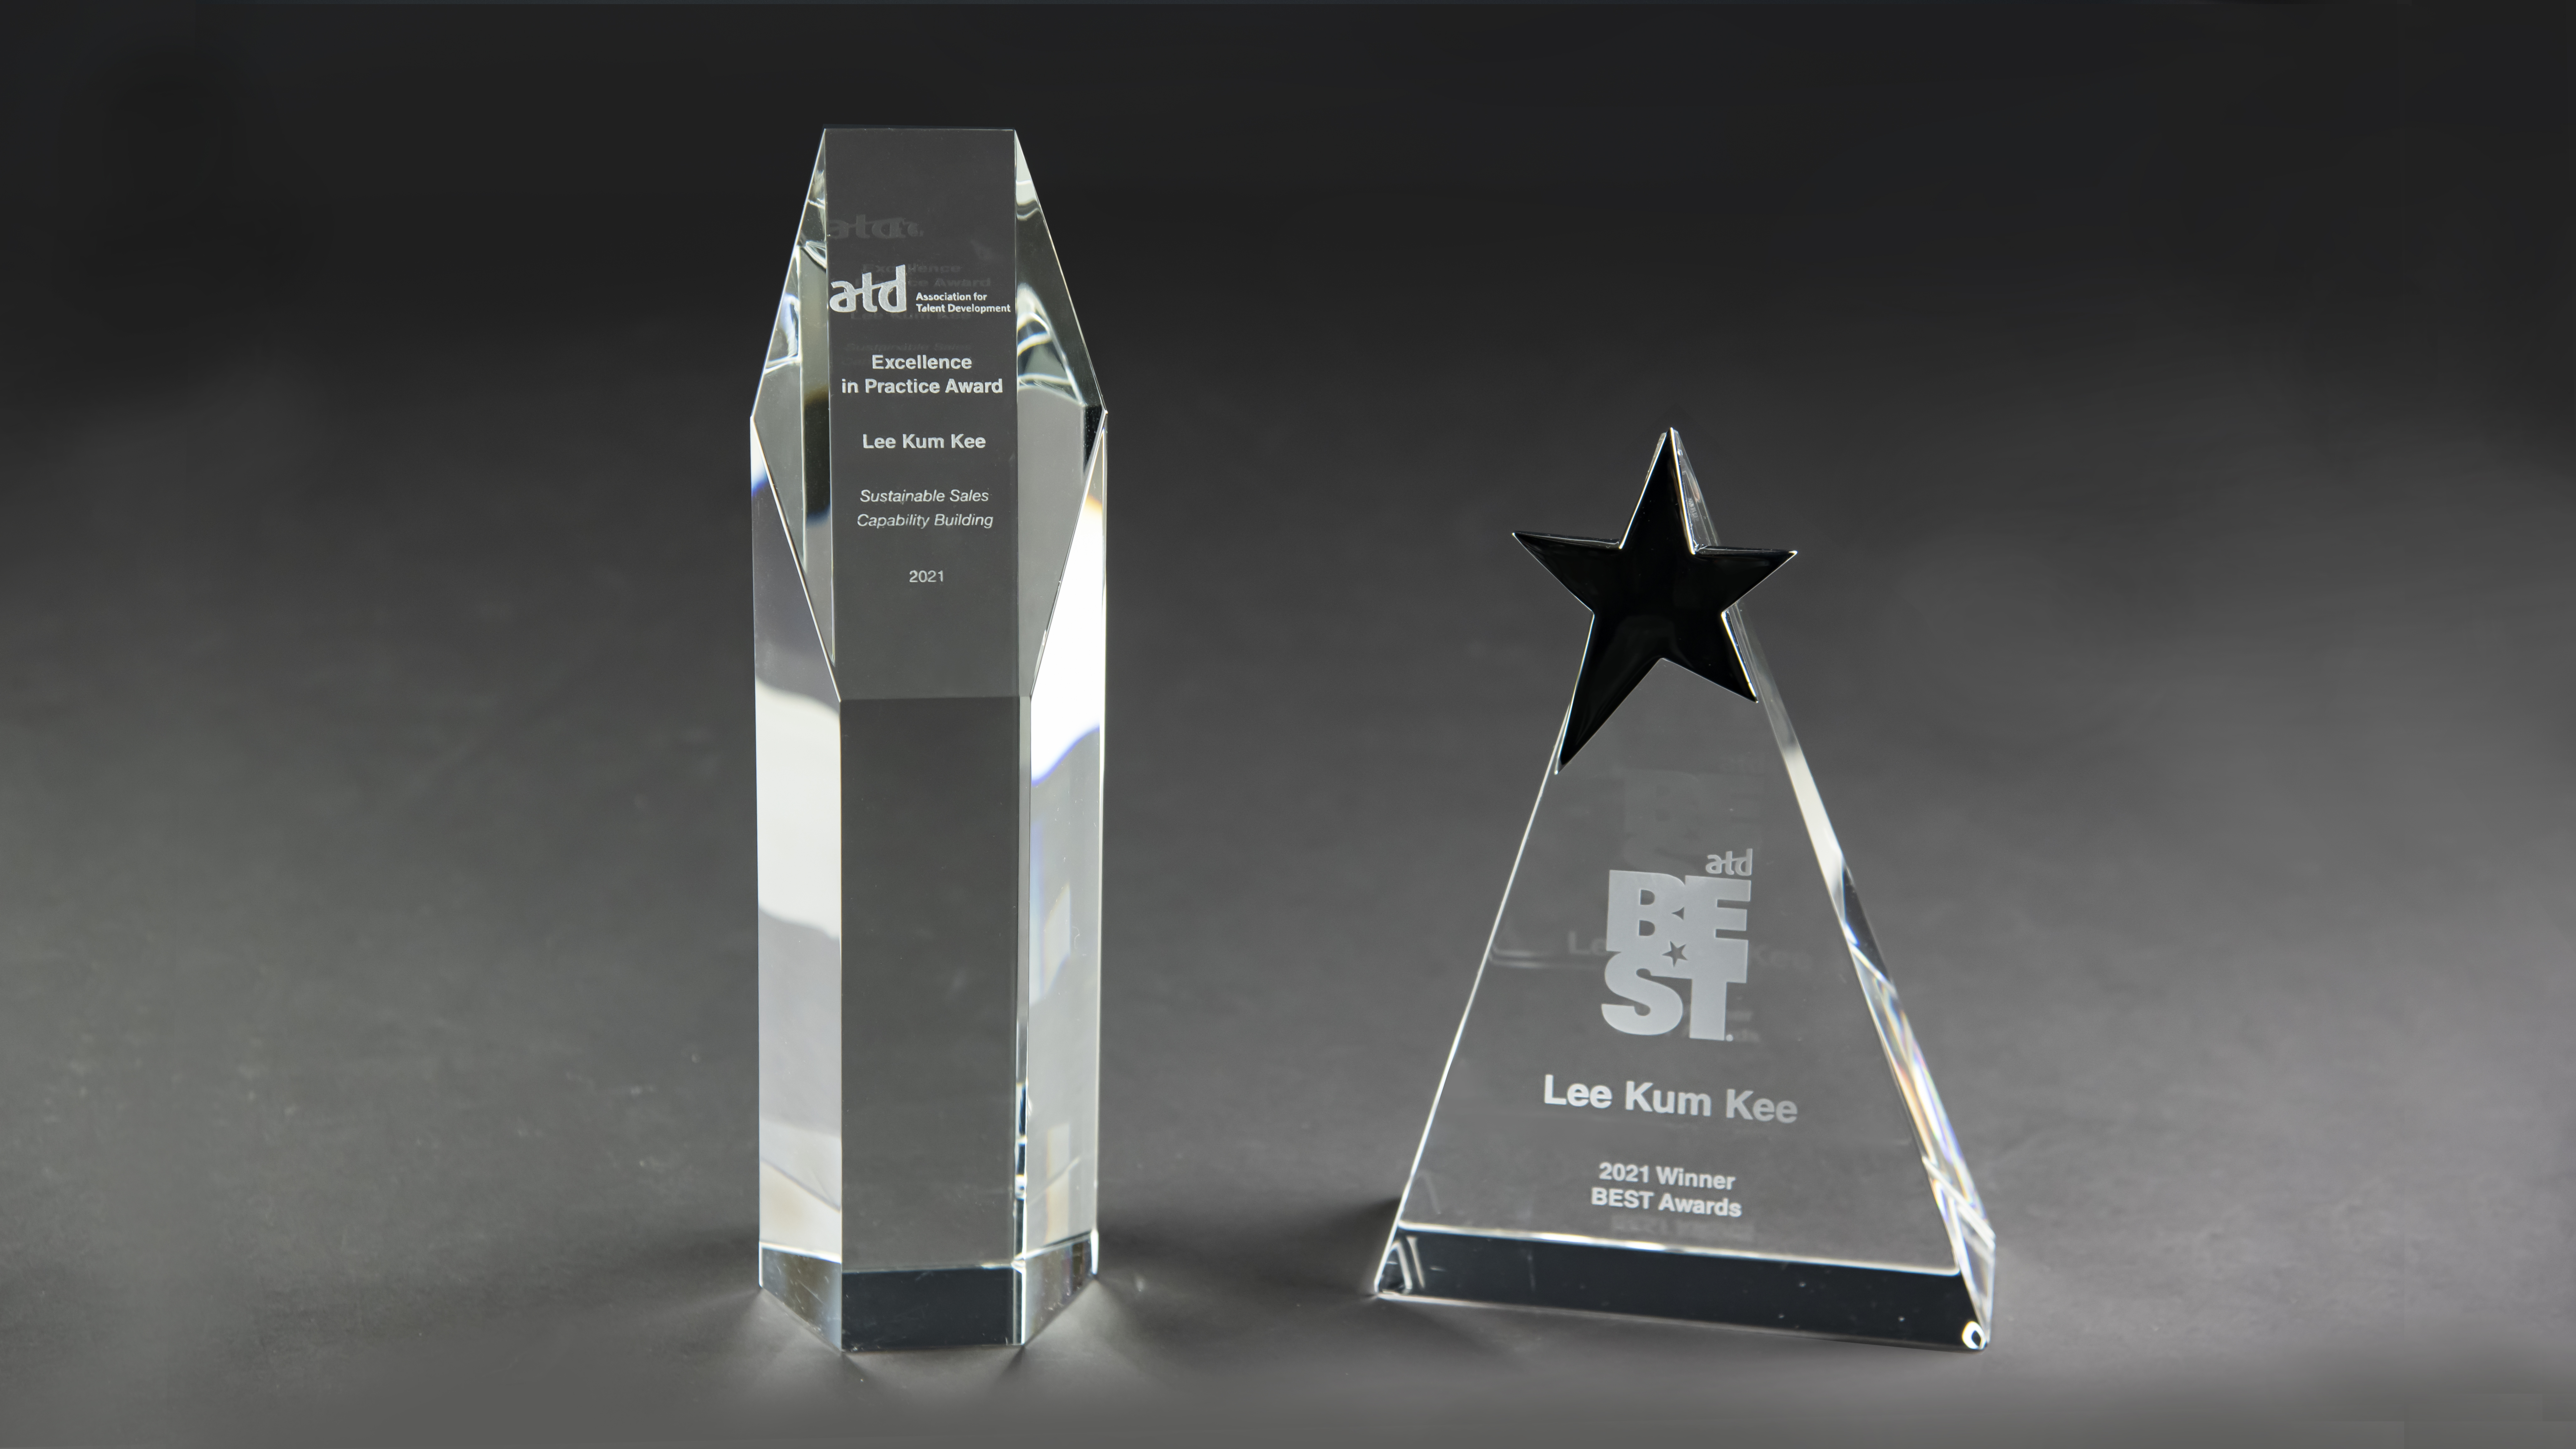 李錦記榮獲人才發展協會頒發「最佳學習型企業獎」及「卓越實踐獎」。